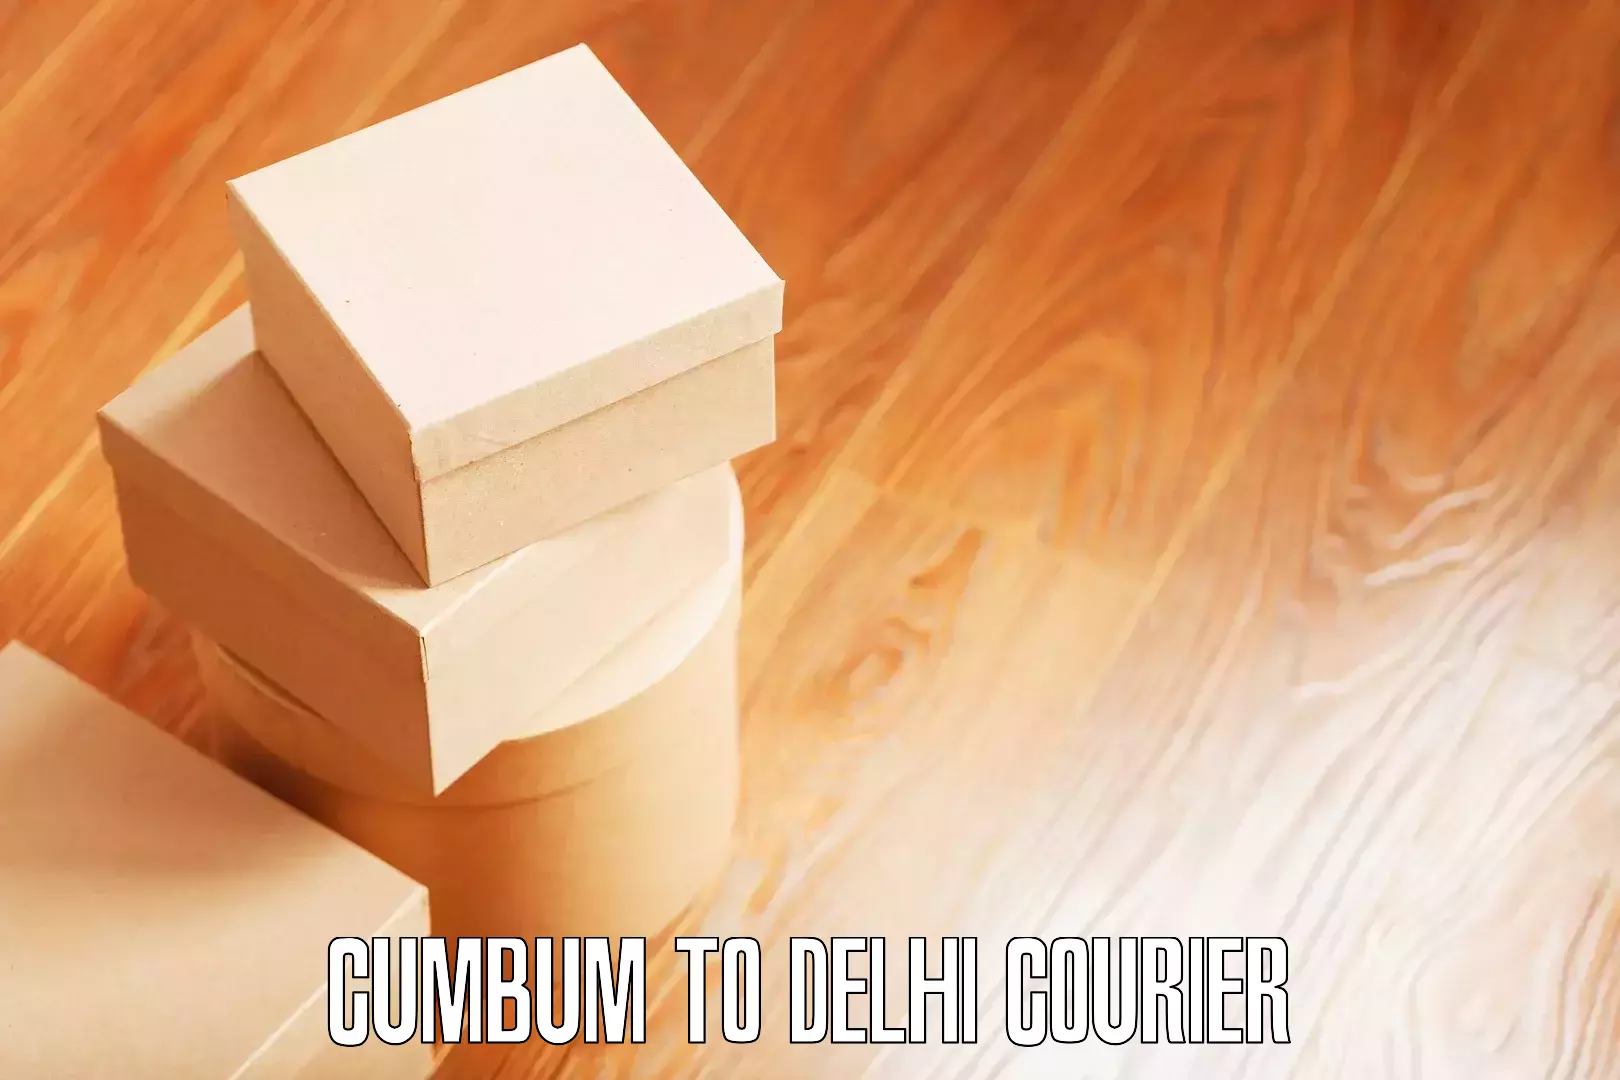 Efficient household relocation Cumbum to Delhi